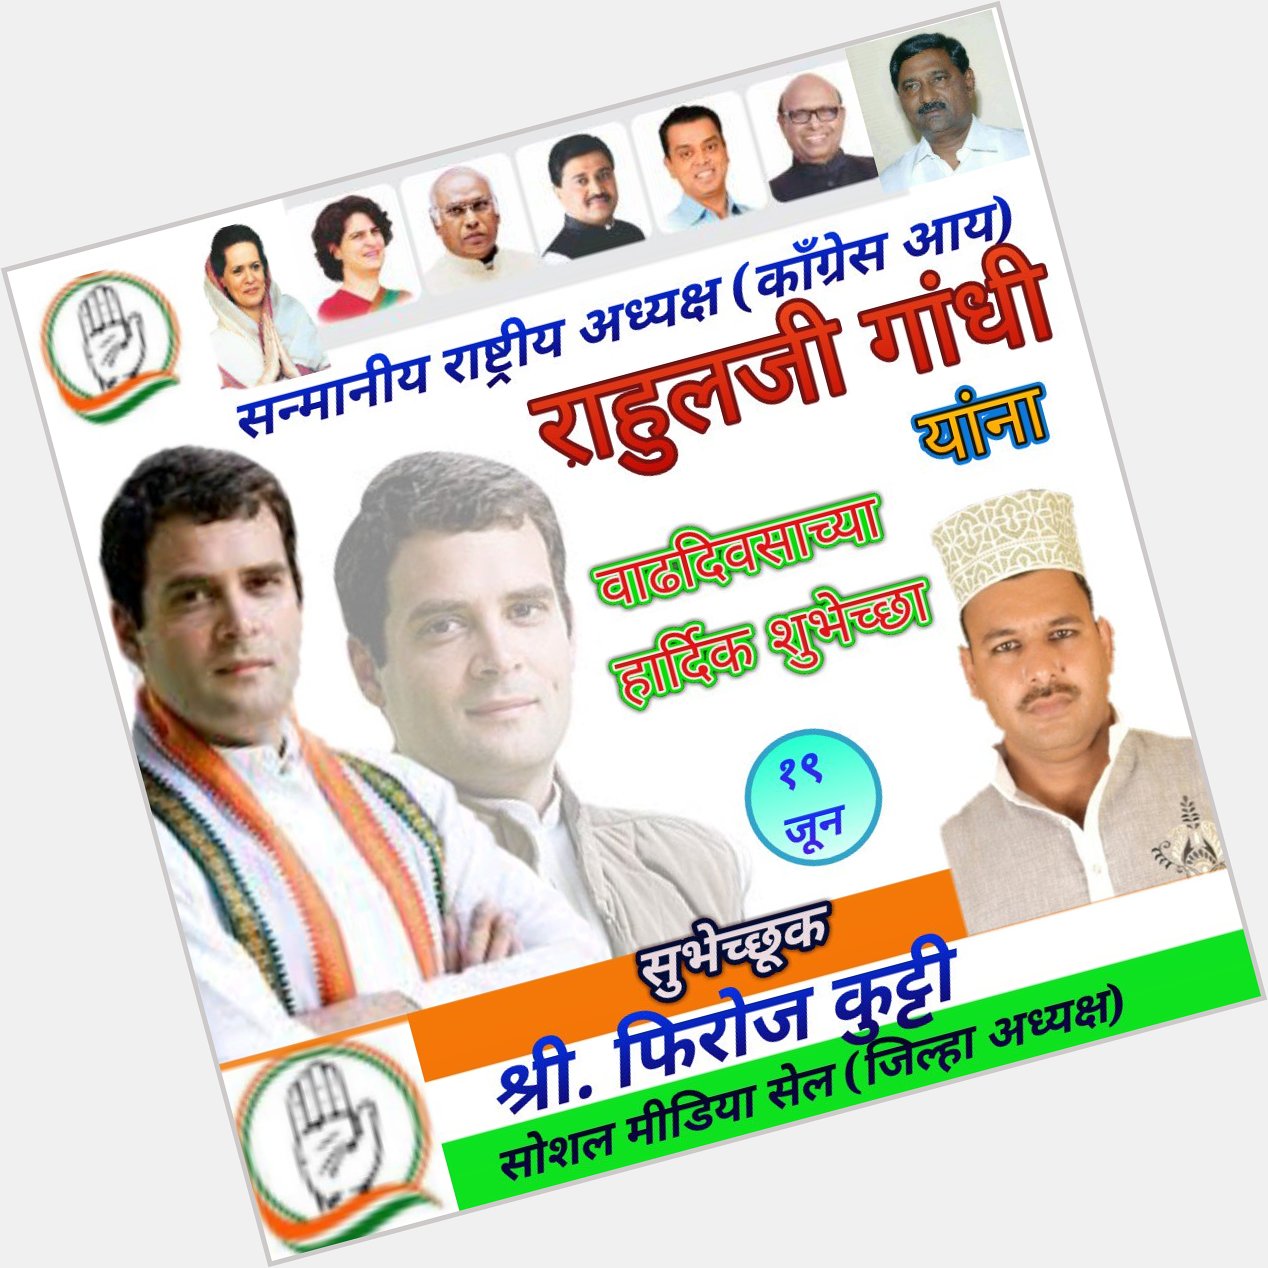 Happy birthday to you Rahul Gandhi ji 